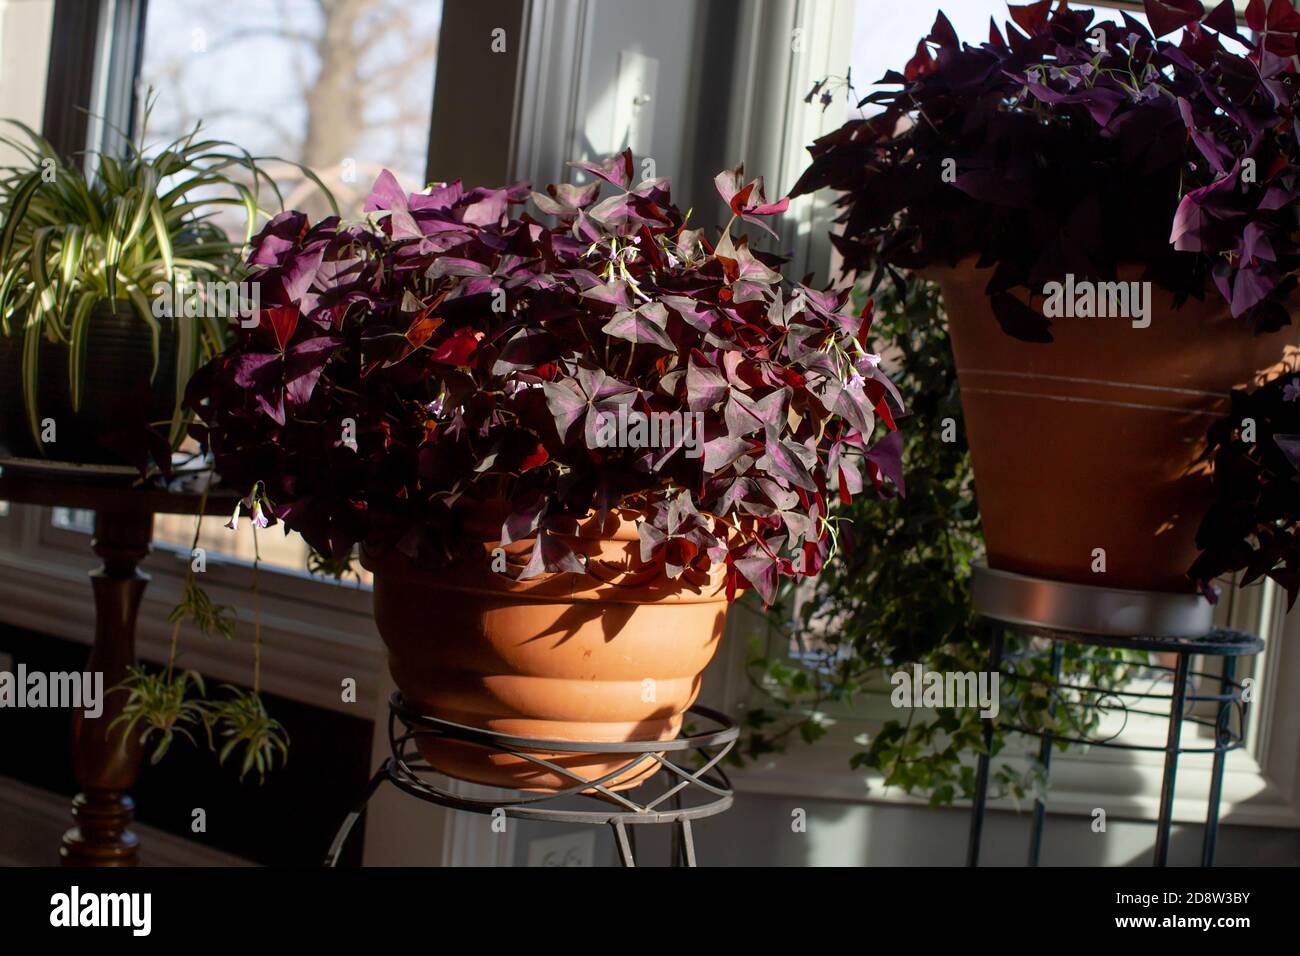 ShamRocks fotofilo viola, oxalis triangularis in vasi di terracotta fiorire con fiori di lavanda, sia piante interne ed esterne di lunga vita. Foto Stock